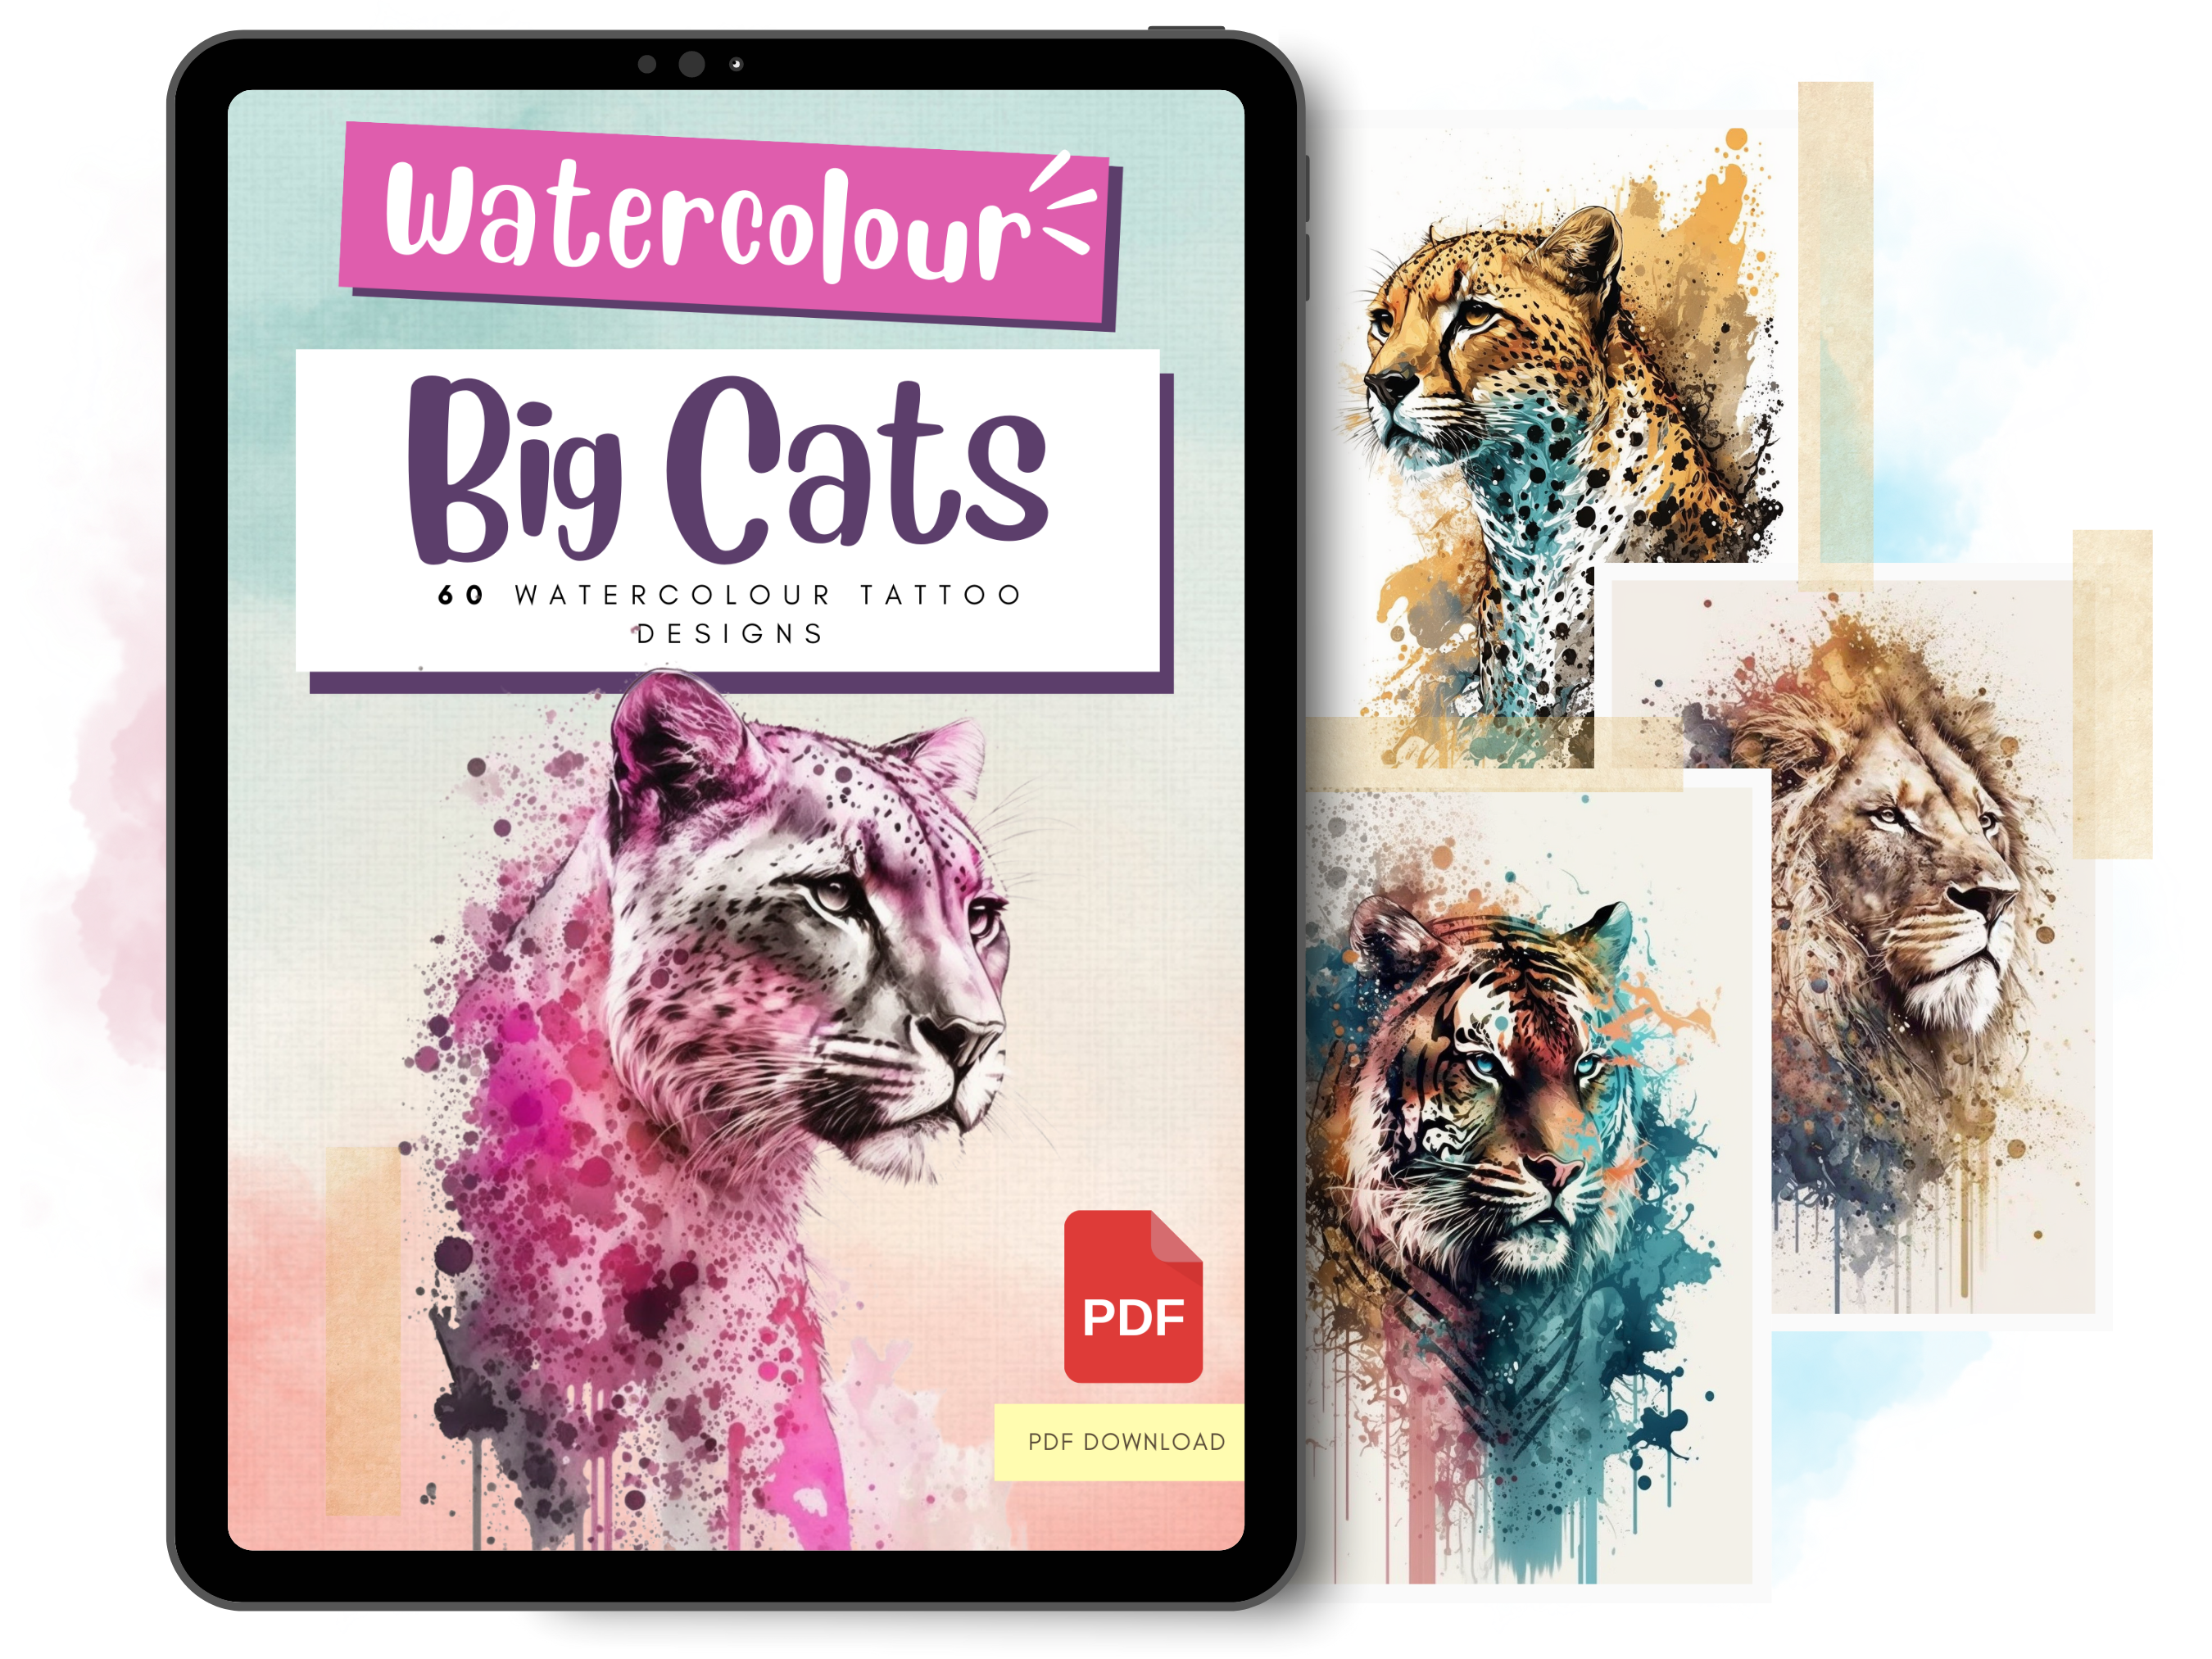 Diseños de tatuajes de acuarela de grandes felinos | Diseños de referencia en PDF para tatuajes